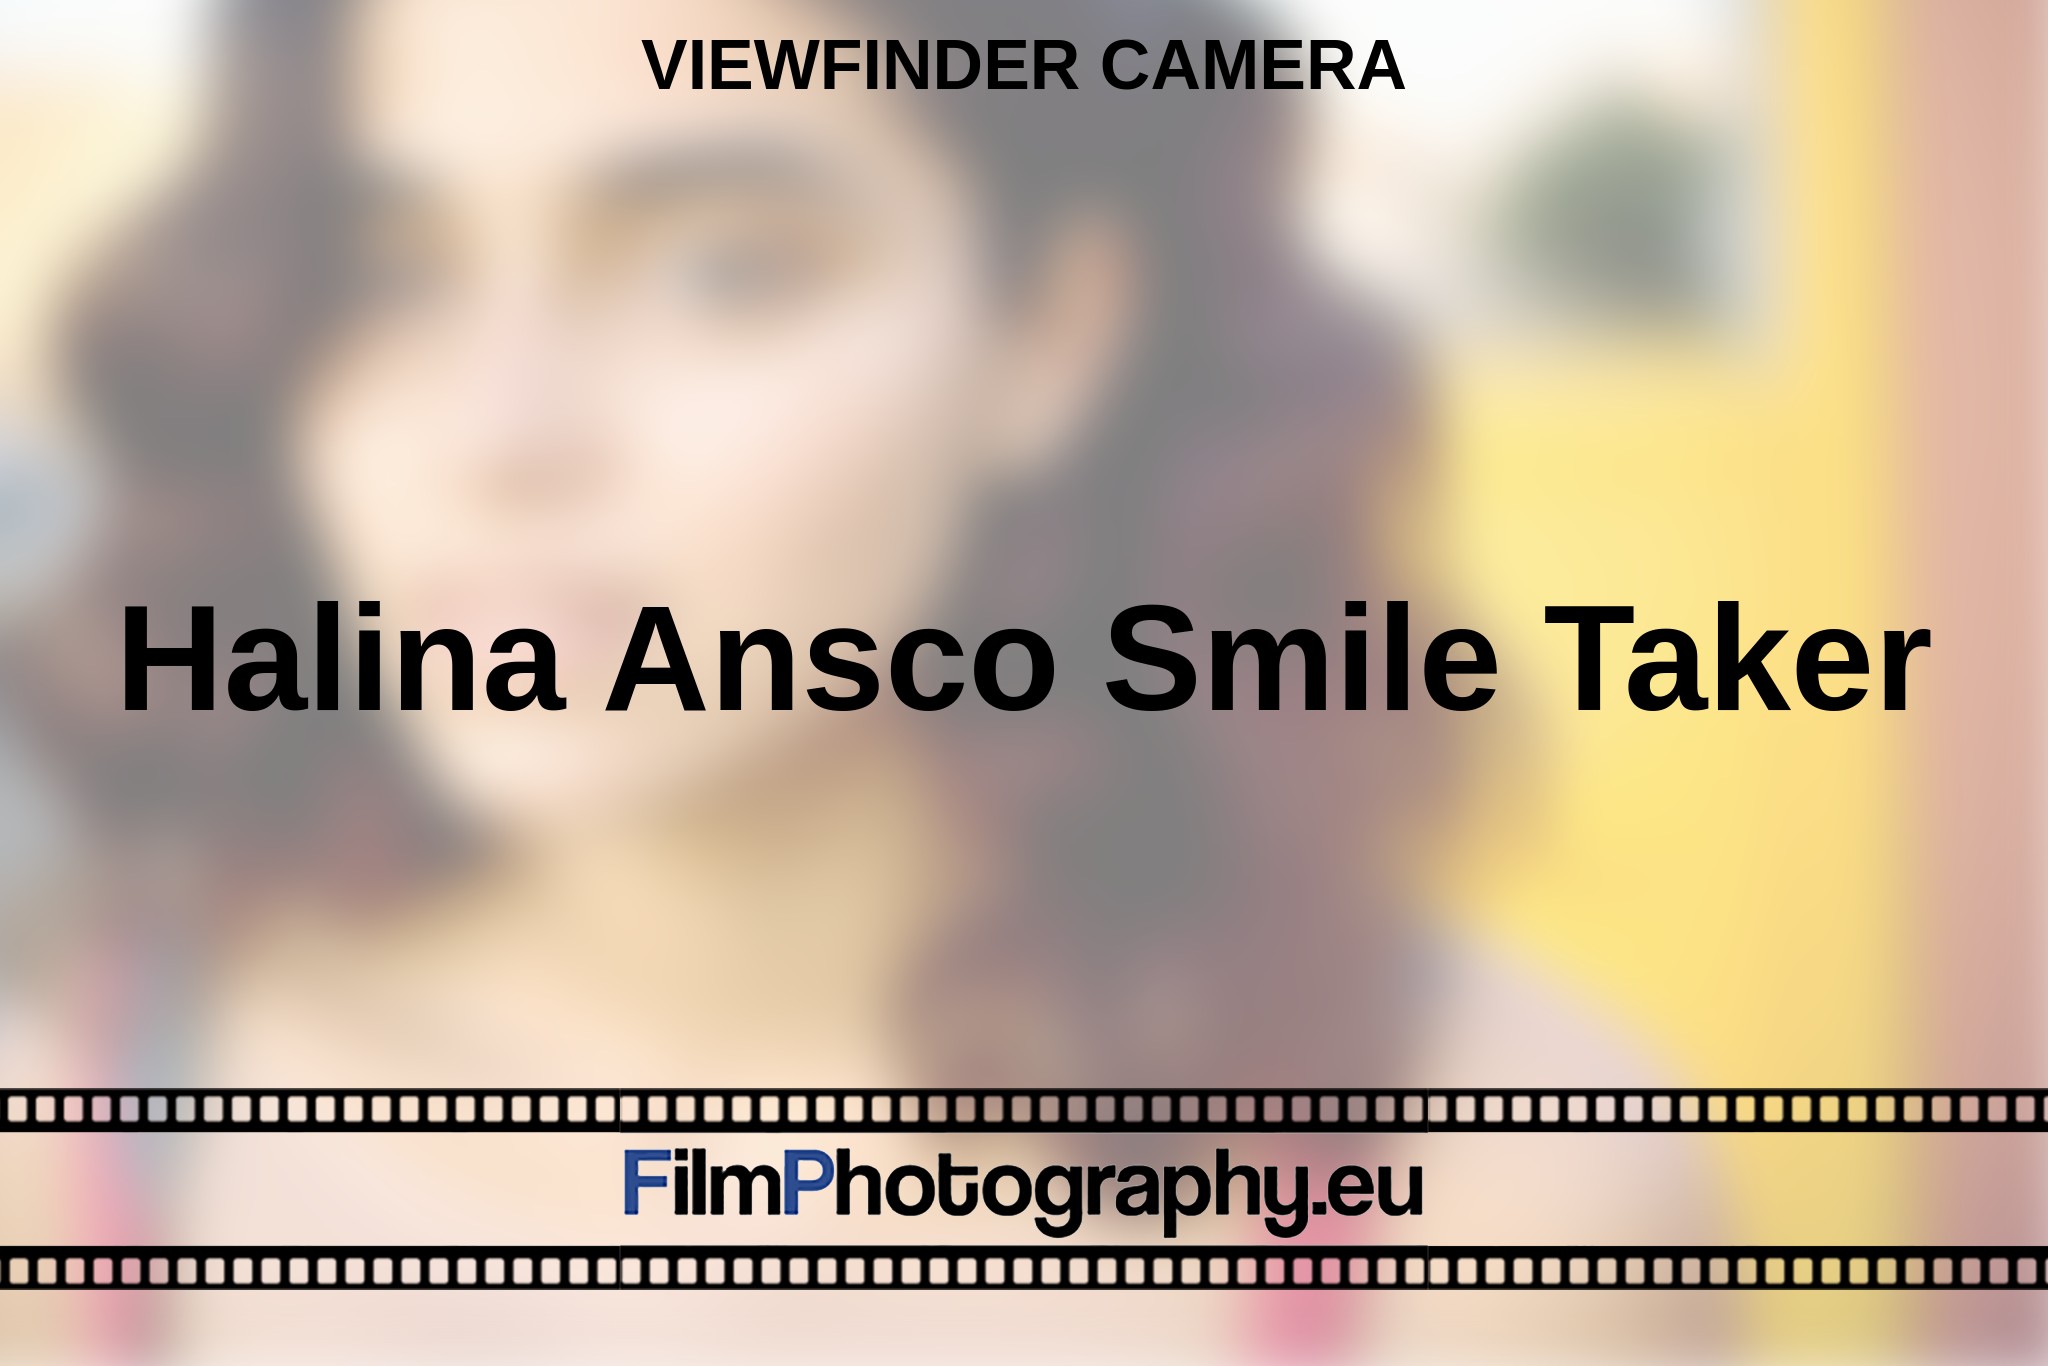 halina-ansco-smile-taker-viewfinder-camera-en-bnv.jpg